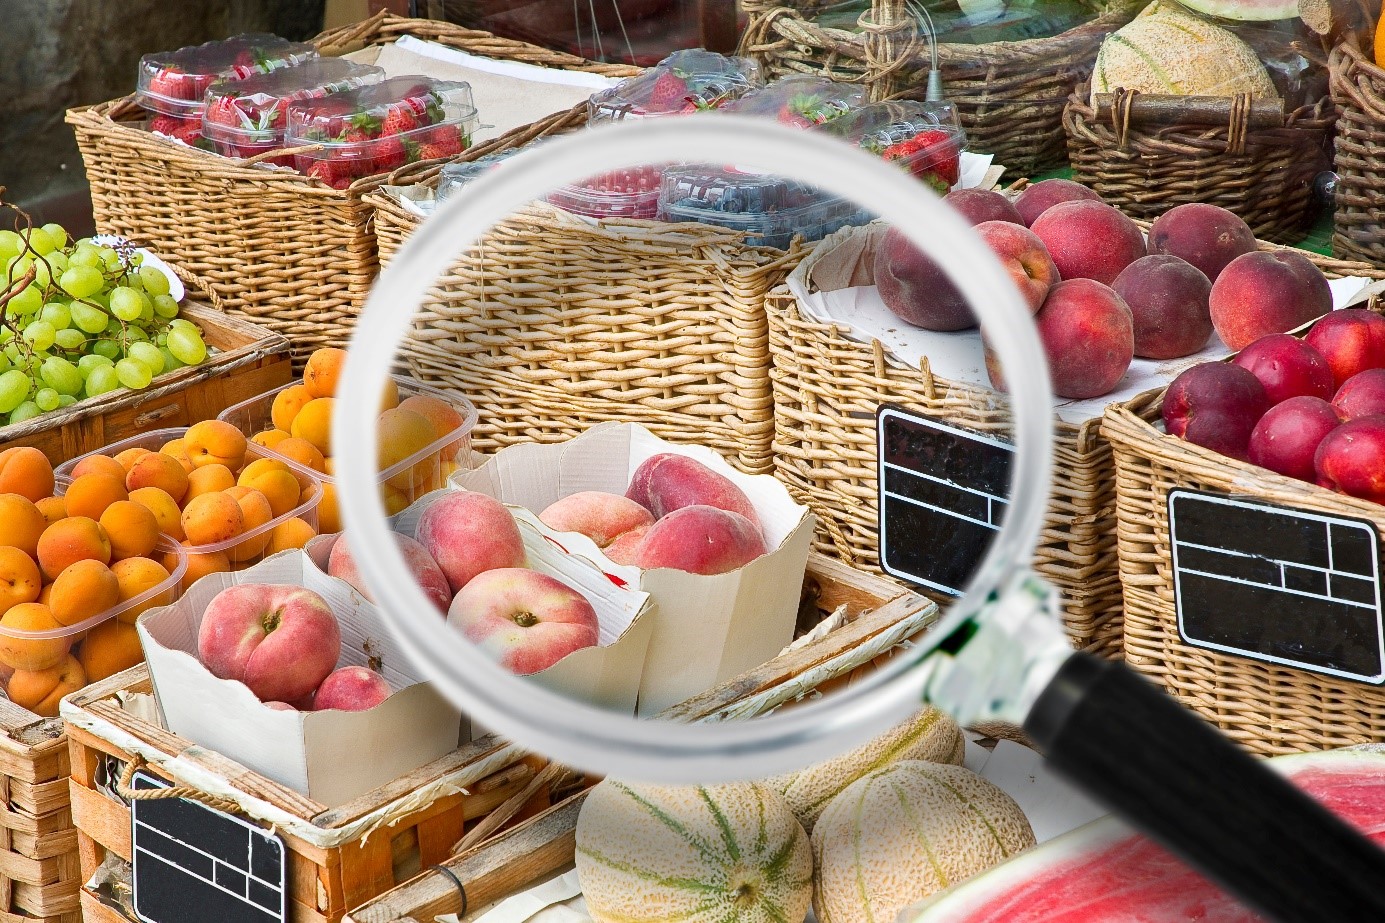 Allgemeine Produktsicherheitsrichtlinie – Konkretere Vorschriften für Lebensmittel & Co.